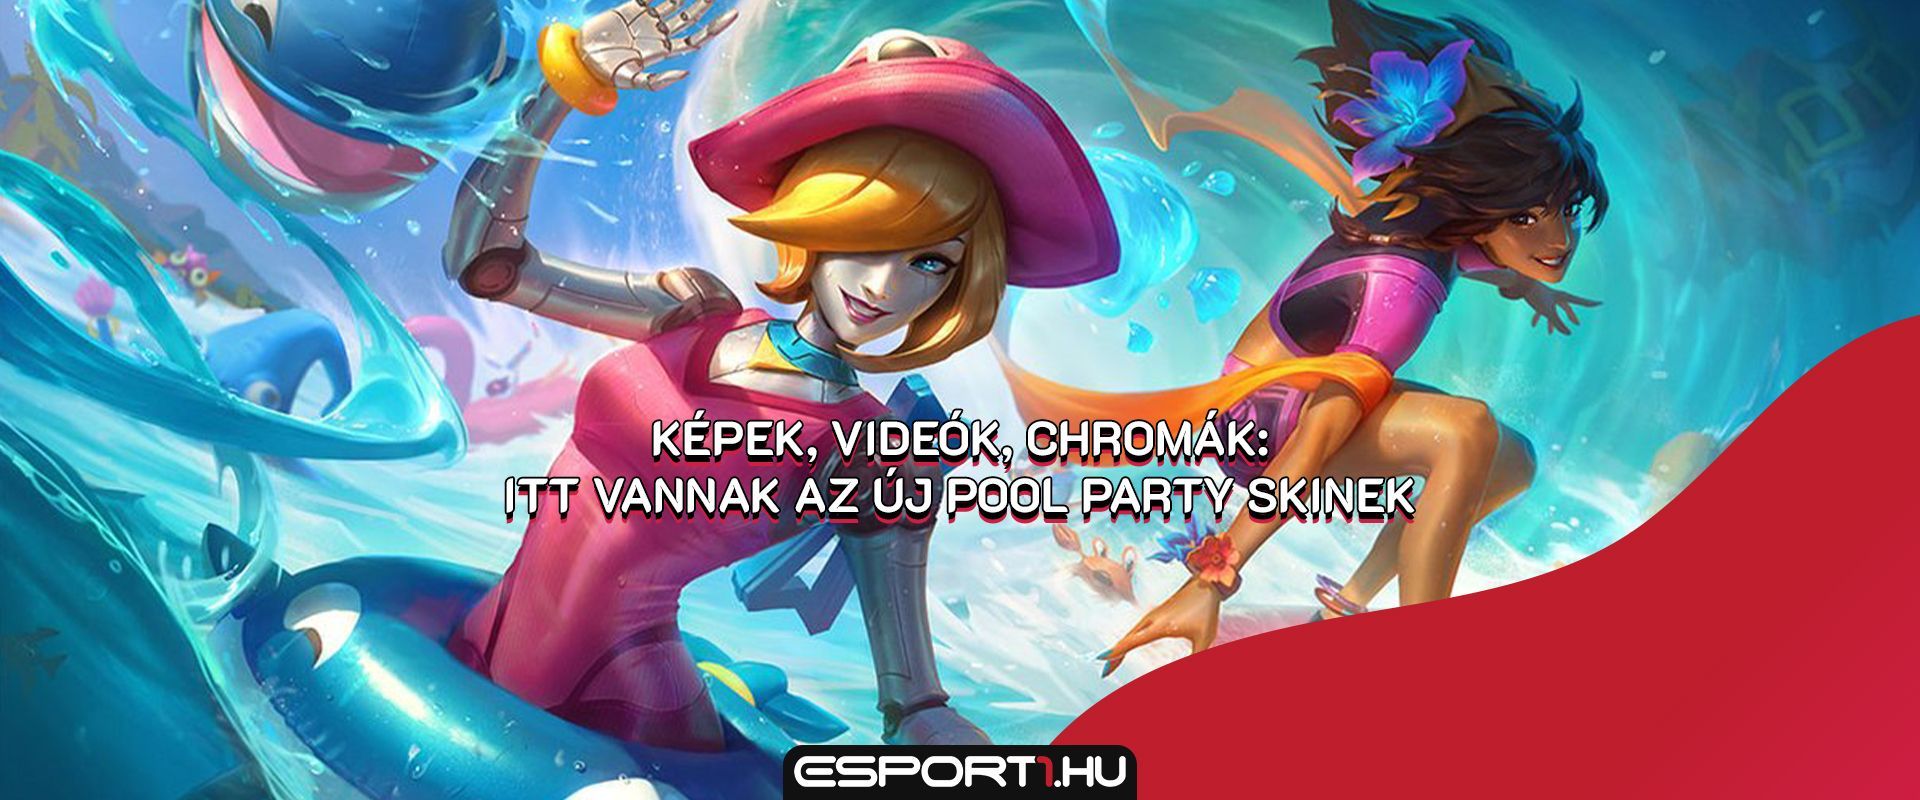 Minden információ az új Pool Party skinekről: Videók, chromák és rengeteg kép